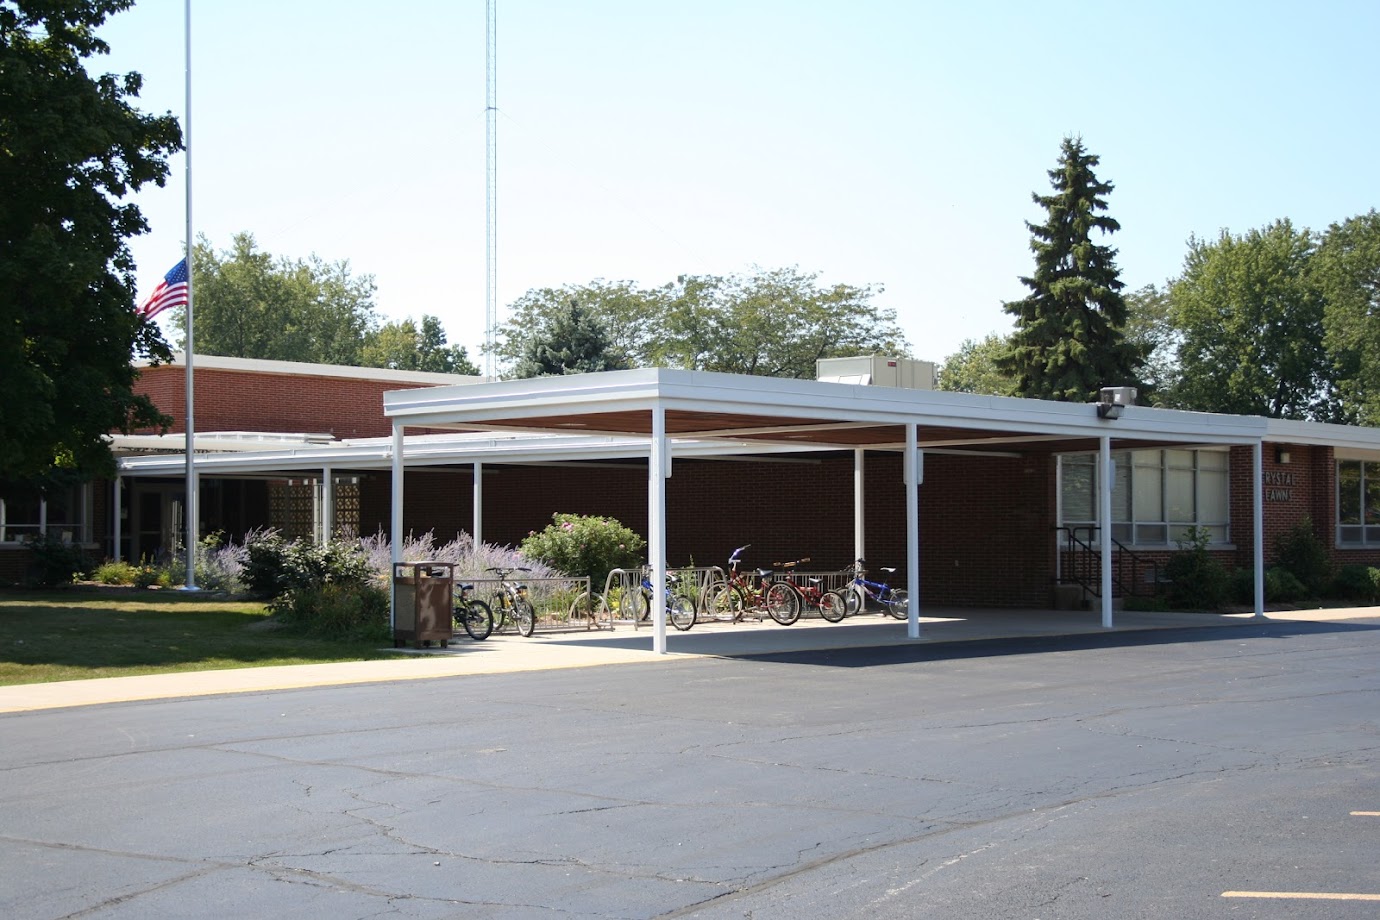 Crystal Lawns Elementary School